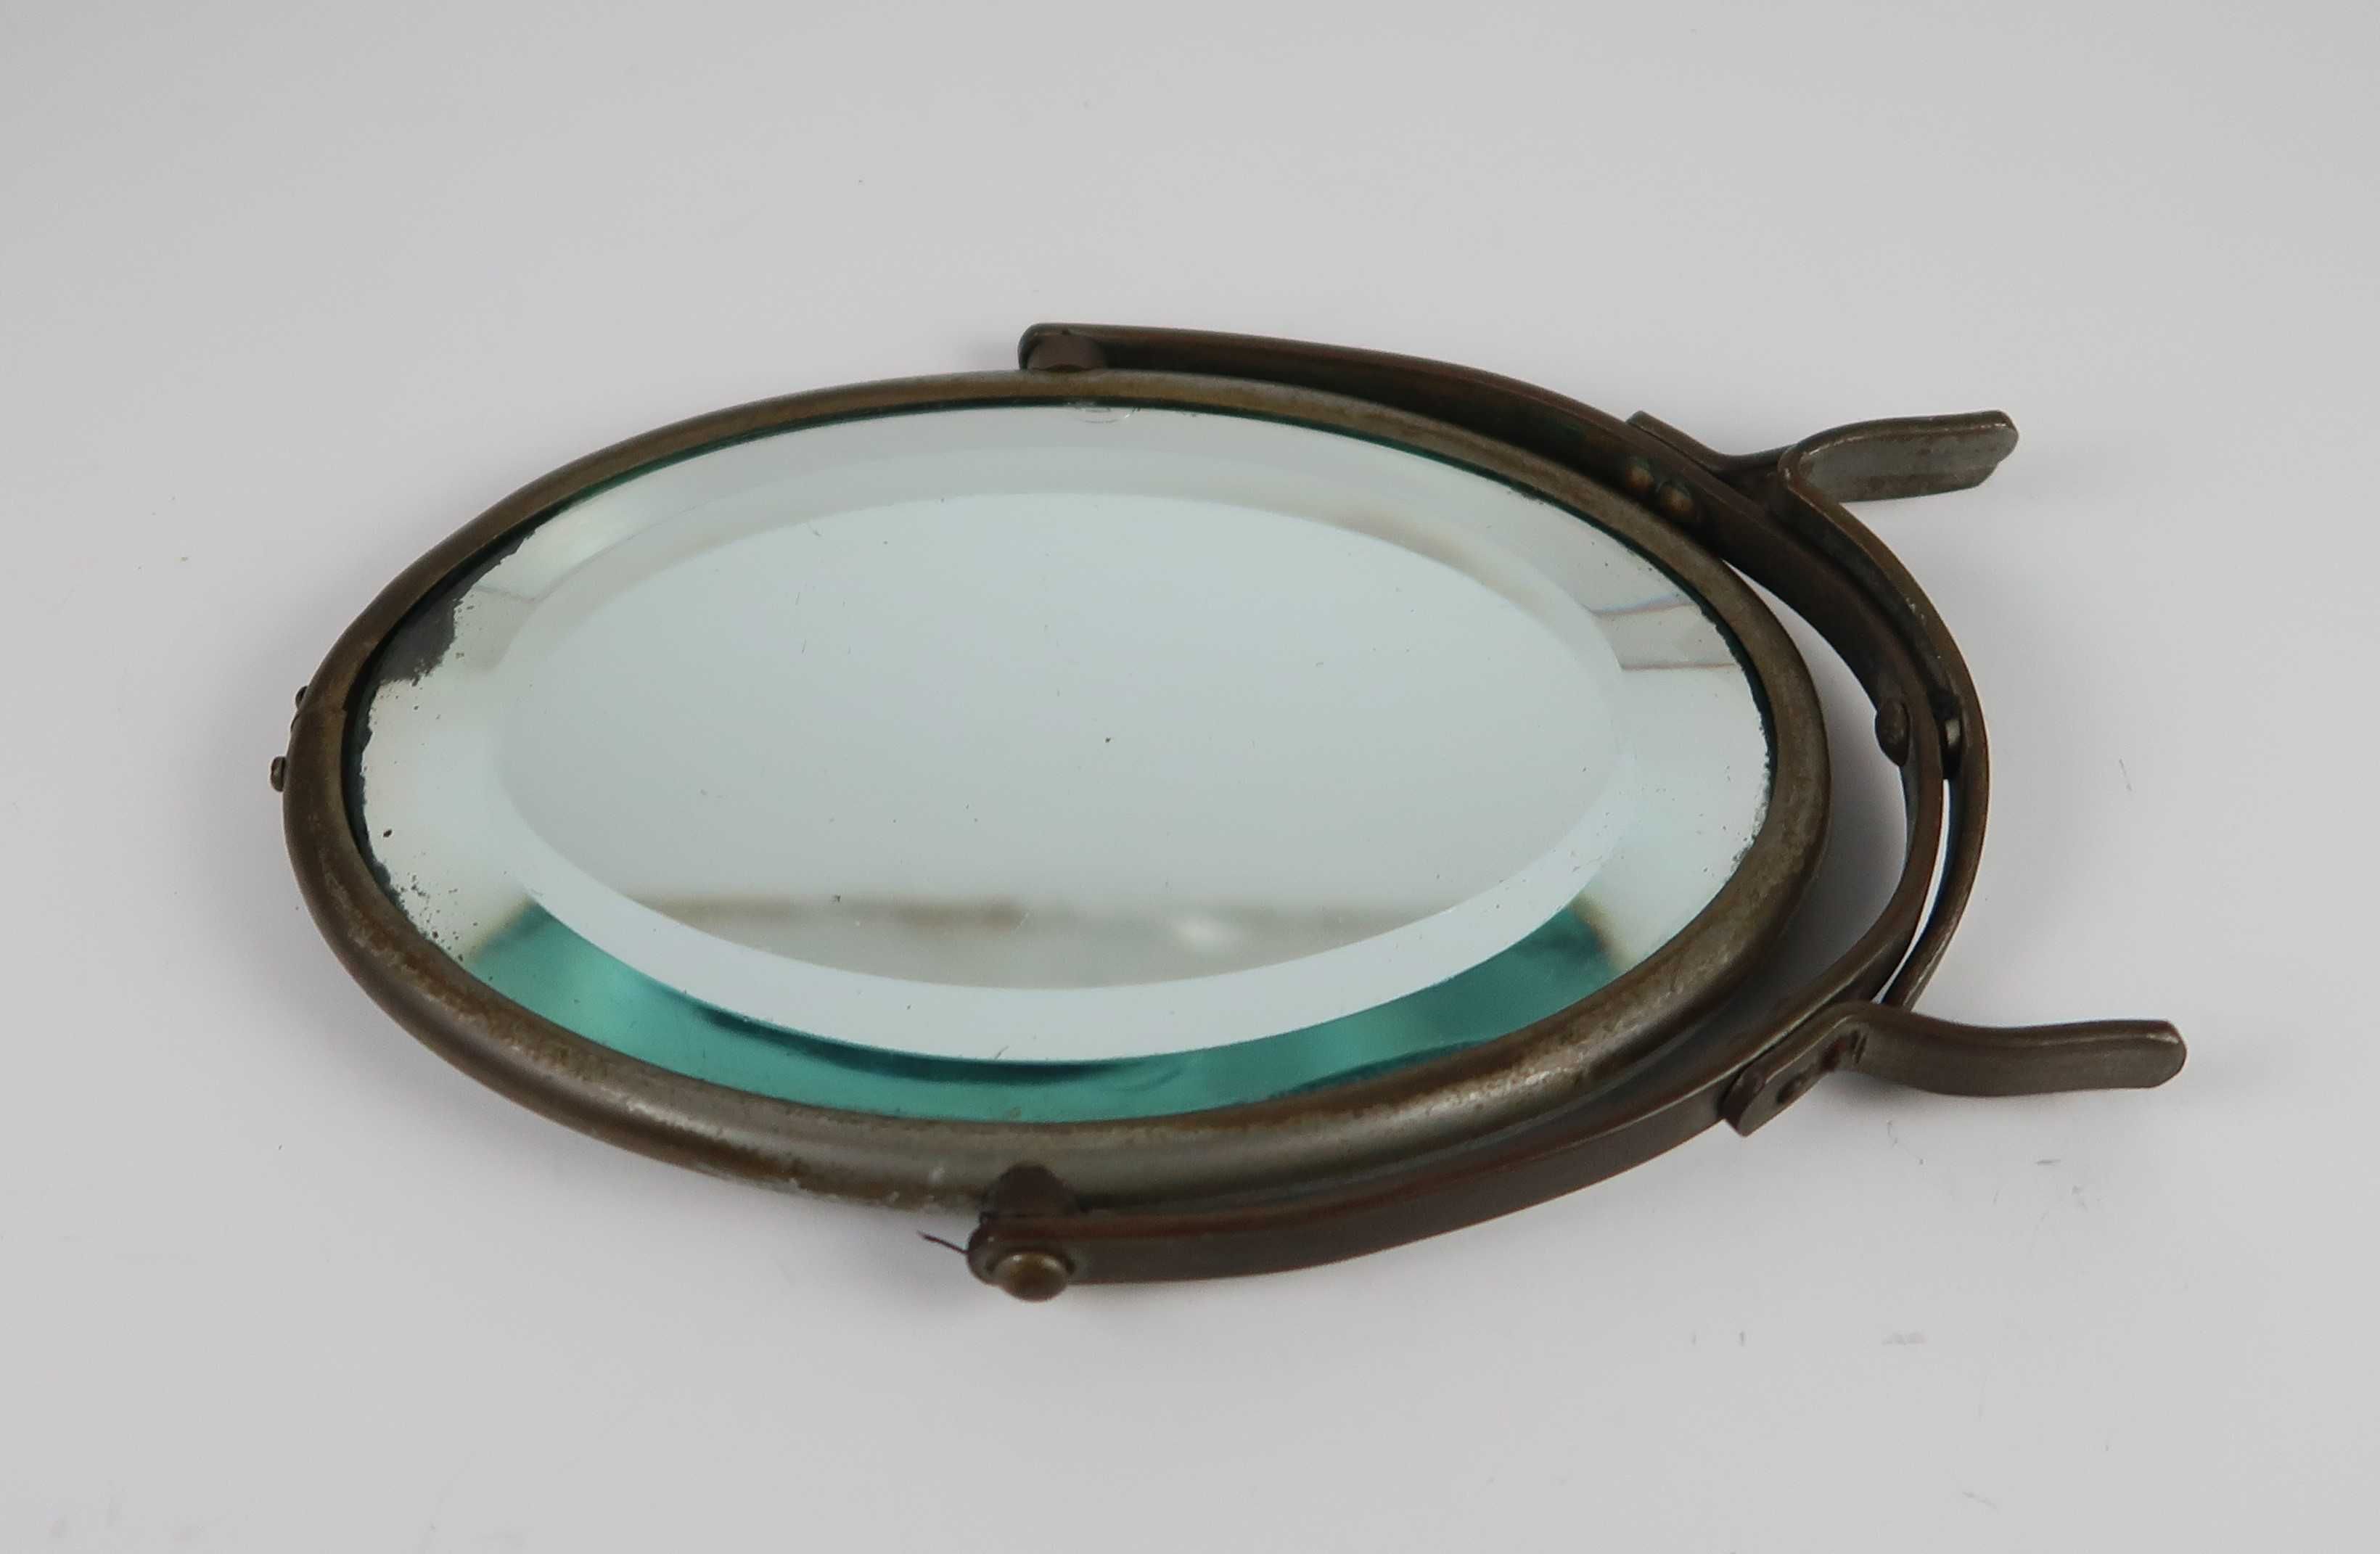 Espelho antigo de toucador basculante